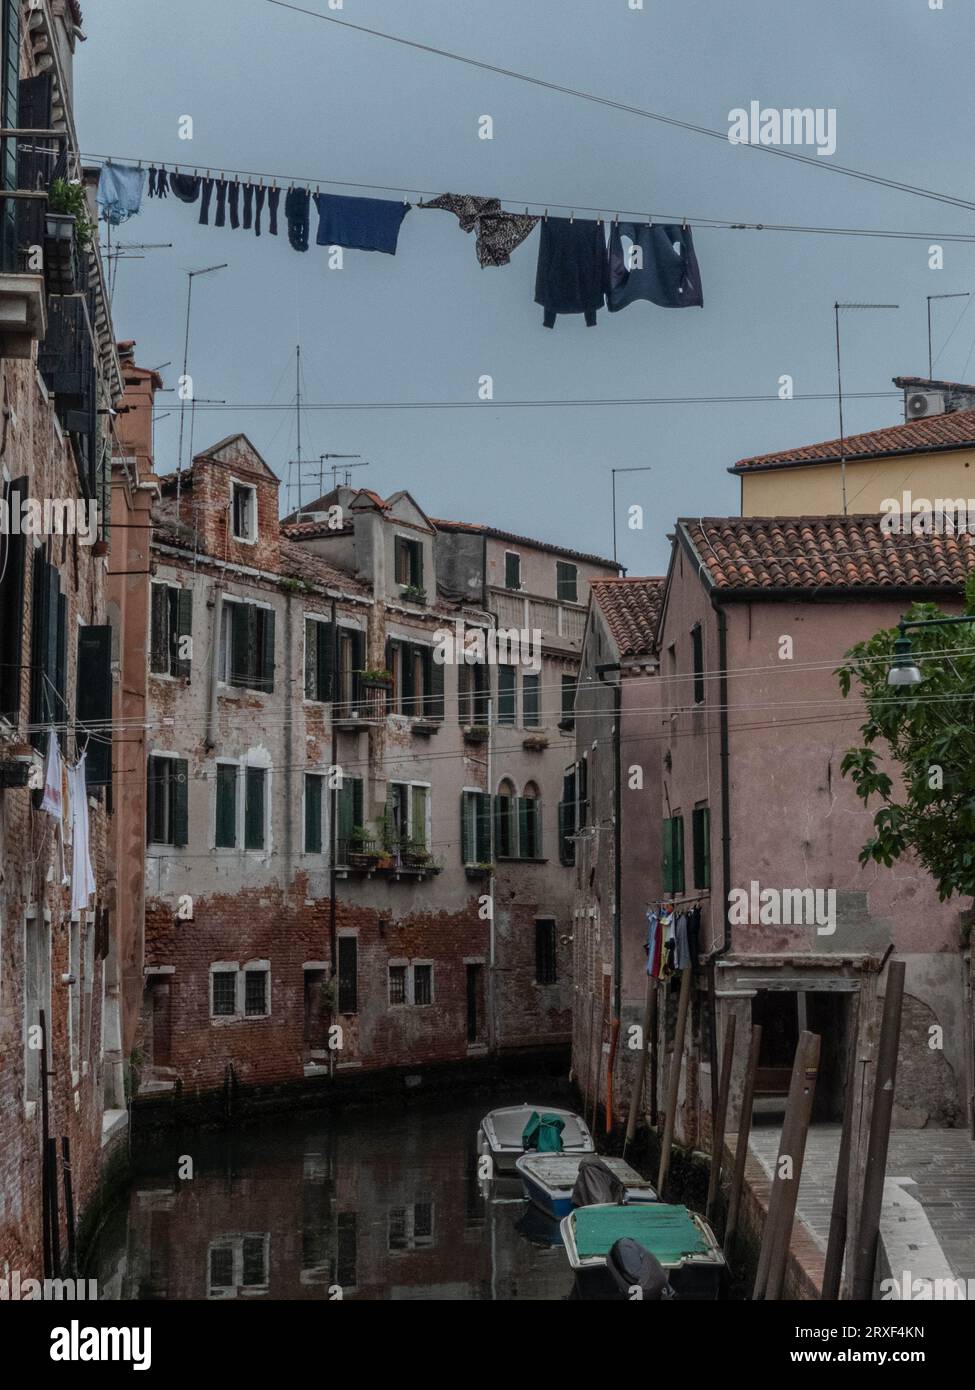 Un tranquillo momento a Venezia: case veneziane che si affacciano su un pittoresco canale, con i panni stesi ad asciugare. Stock Photo